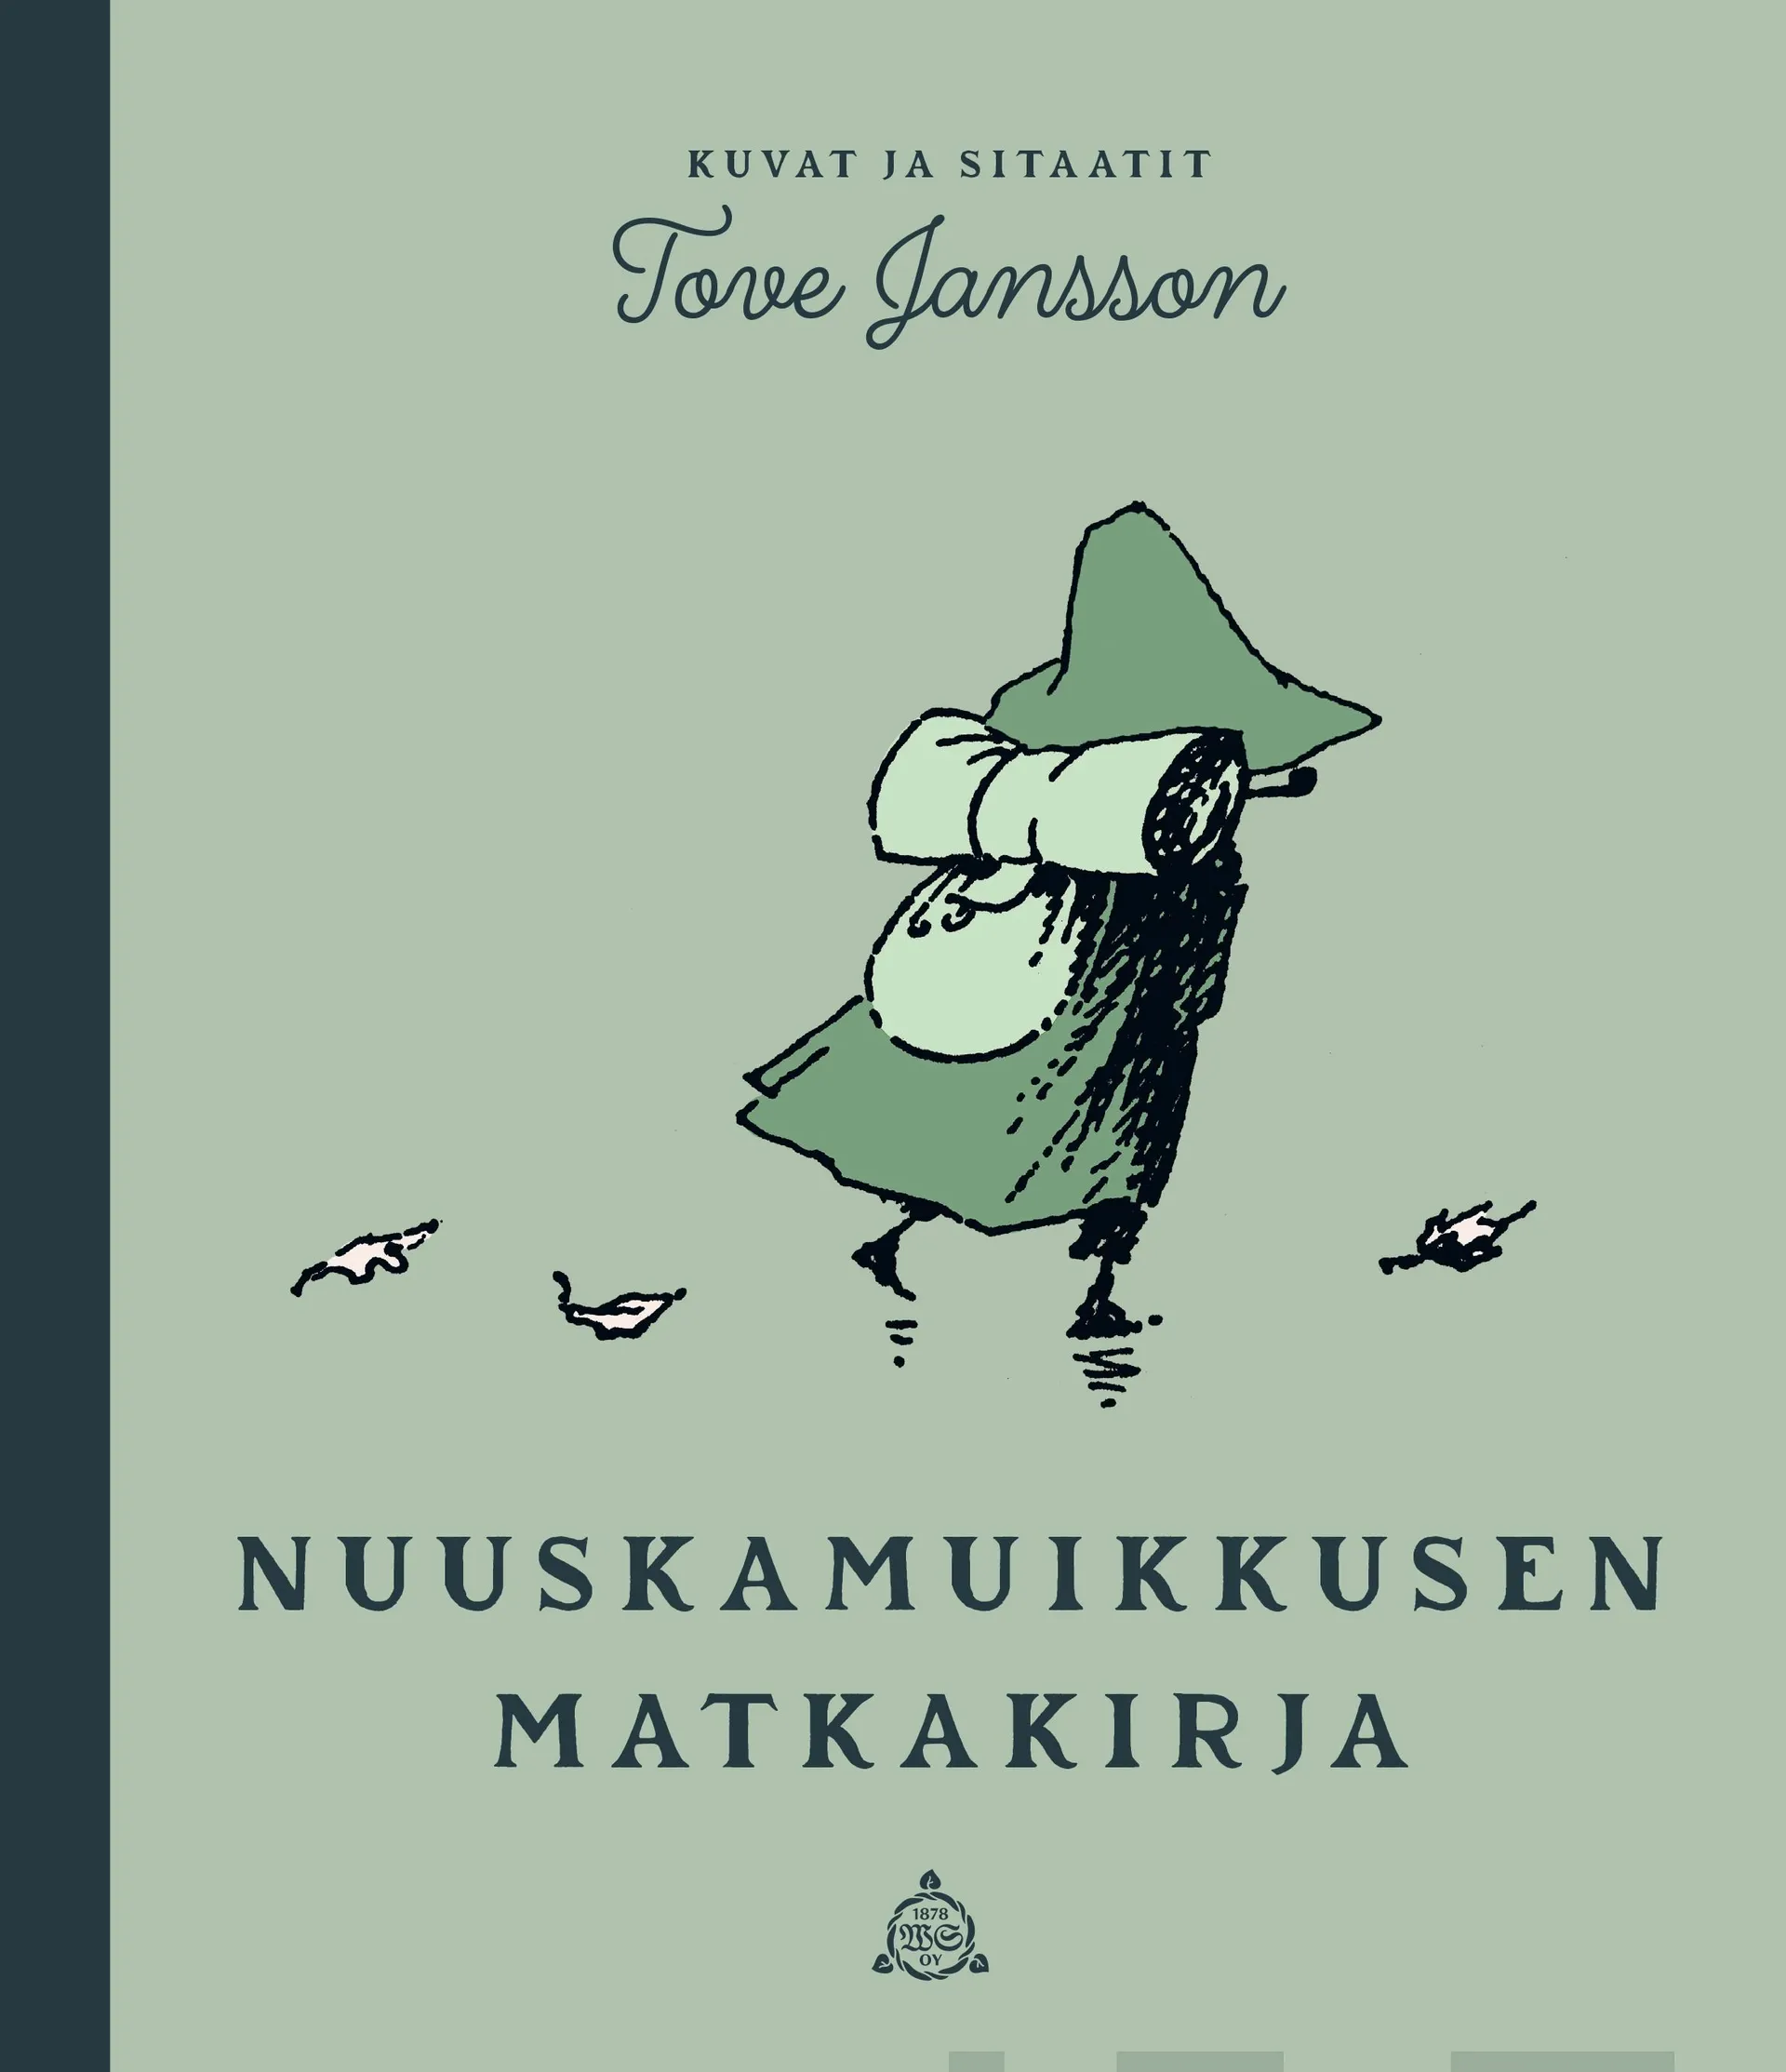 Jansson, Nuuskamuikkusen matkakirja